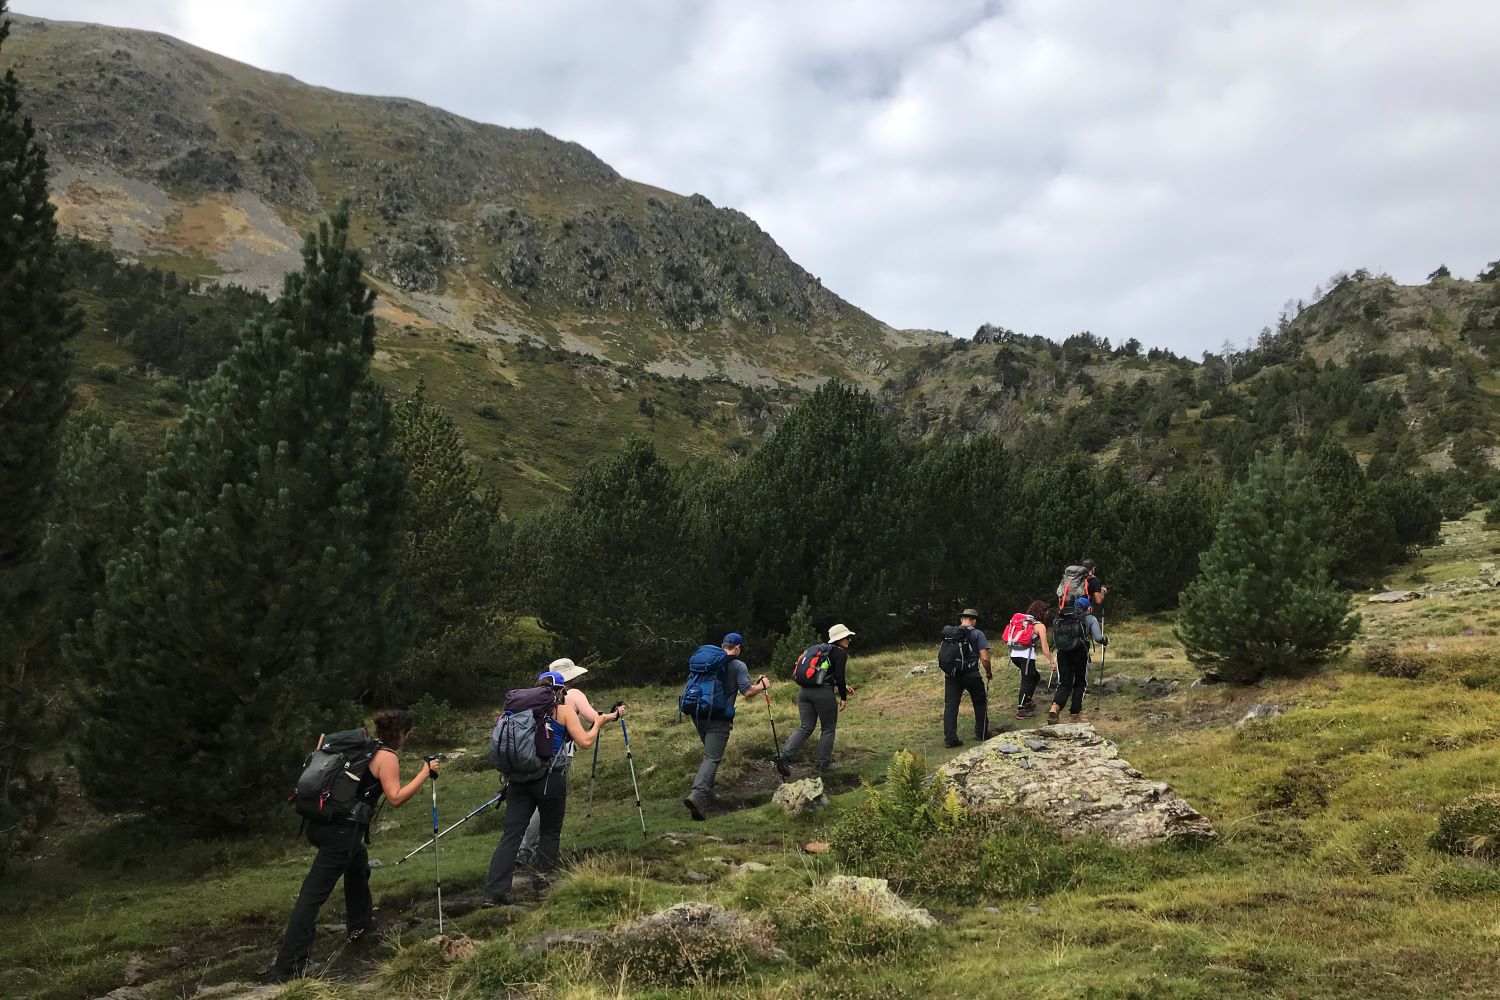 Alcoa Employees hiking through the mountains